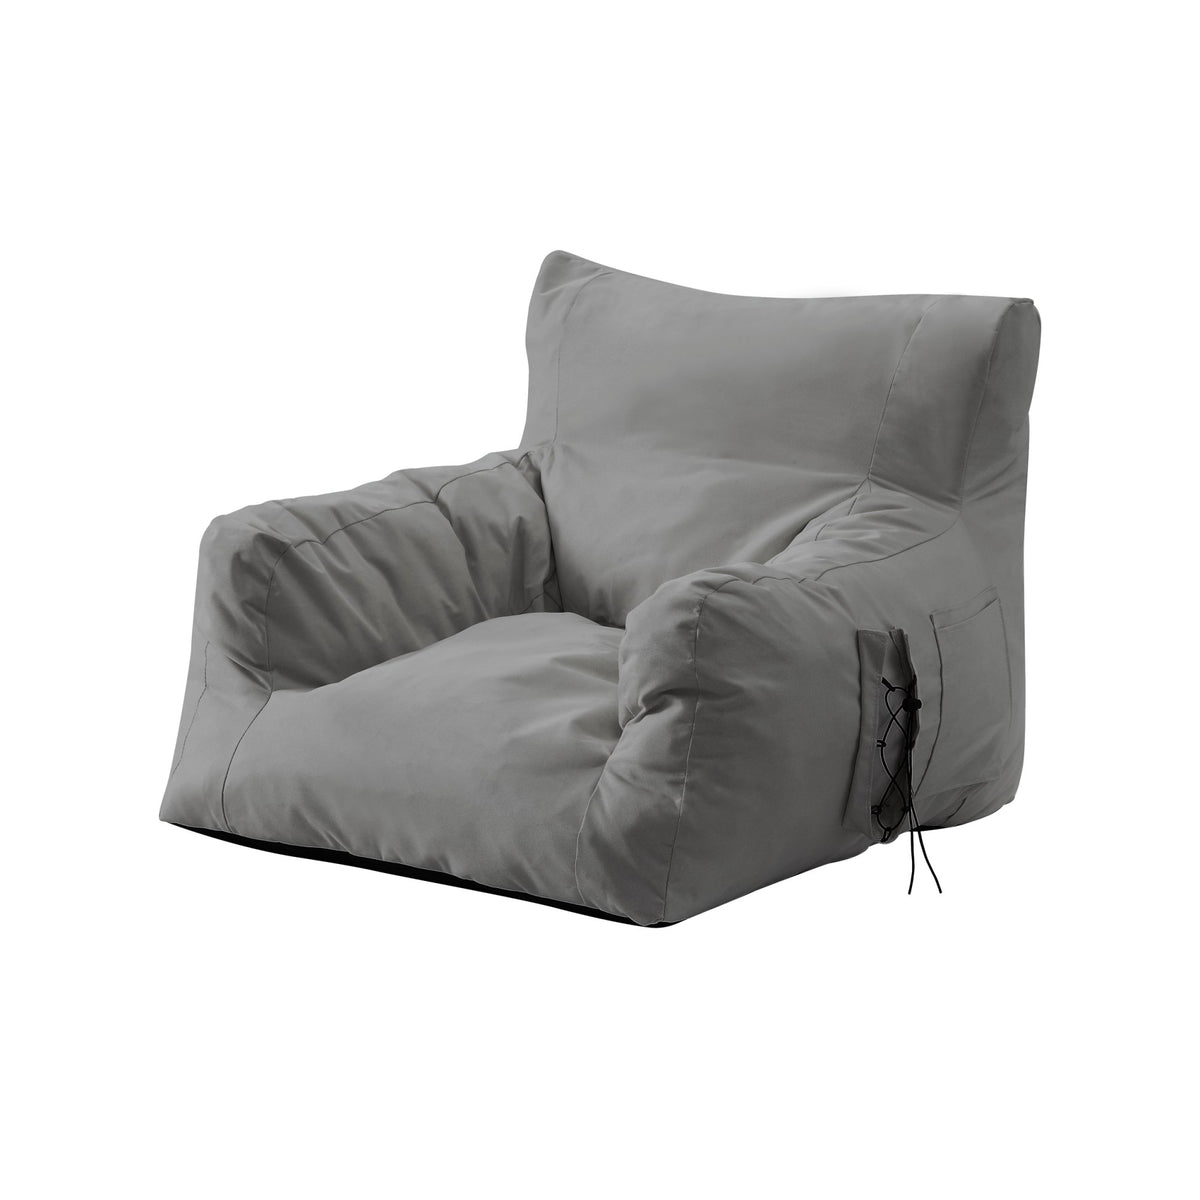 https://loungieliving.com/cdn/shop/products/bean-bag-chair-lounge-chair-memory-foam-chair-floor-arm-chair-comfy-bean-bag-memory-foam-floor-chair-2_1200x.jpg?v=1682546673